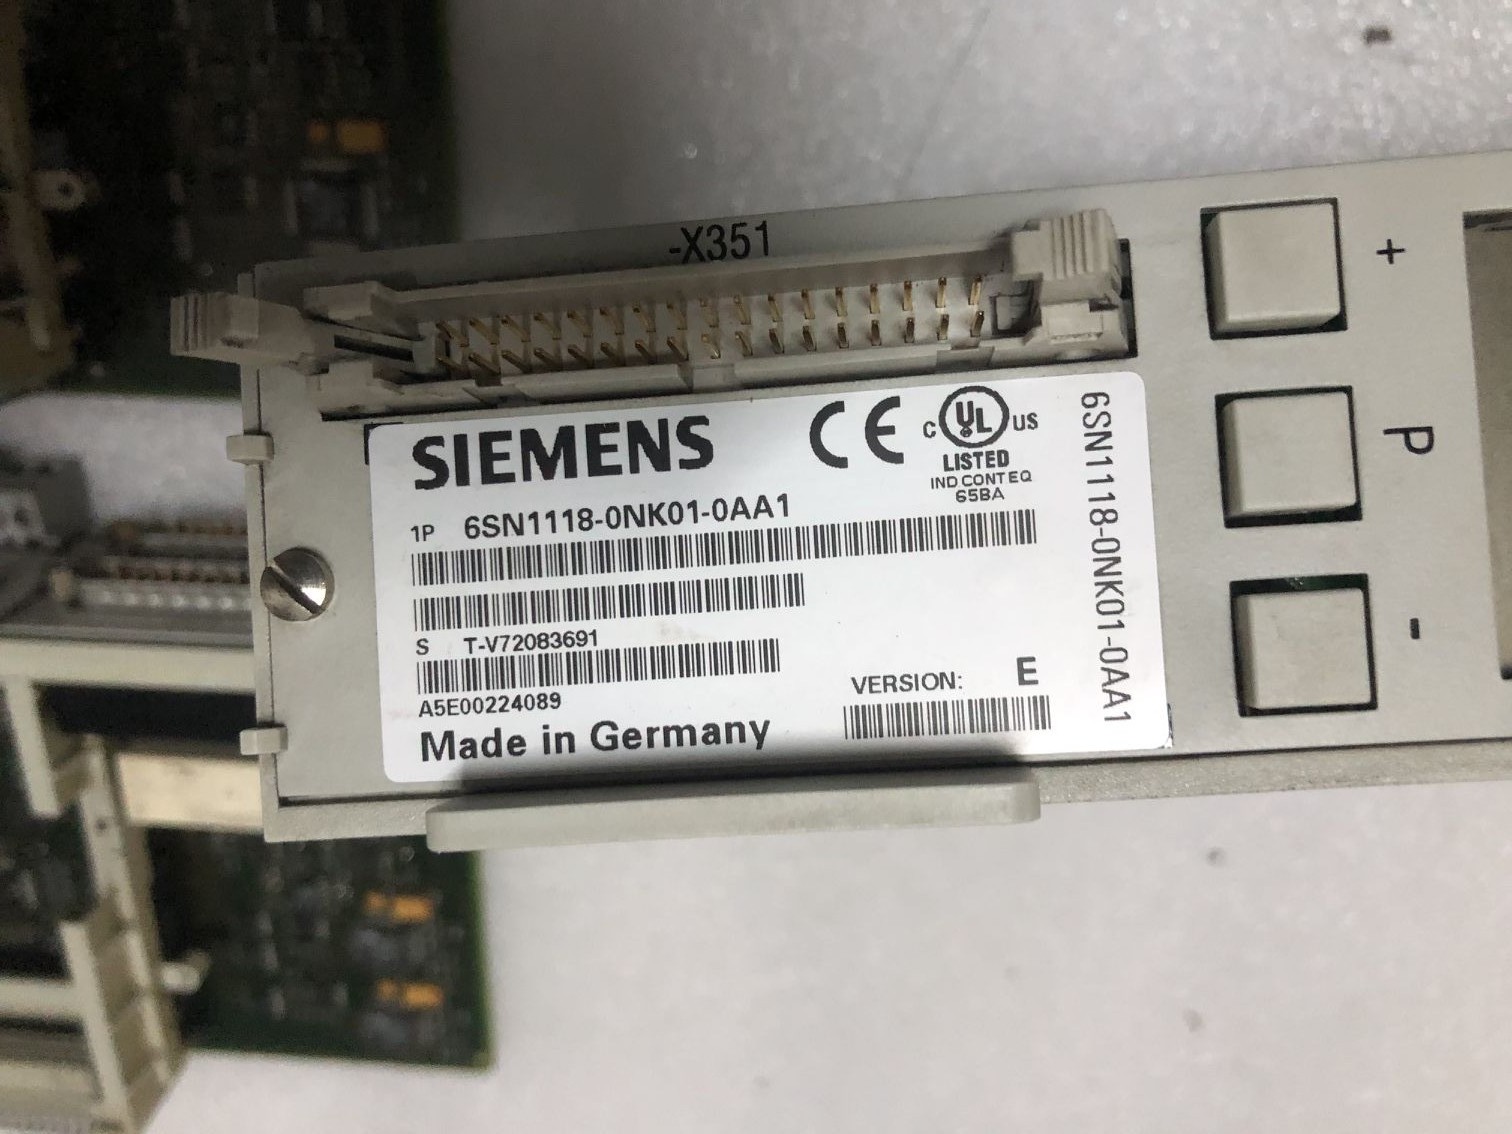 A5E00224089 Siemens axis card 6SN1118-0NK01-0AA1